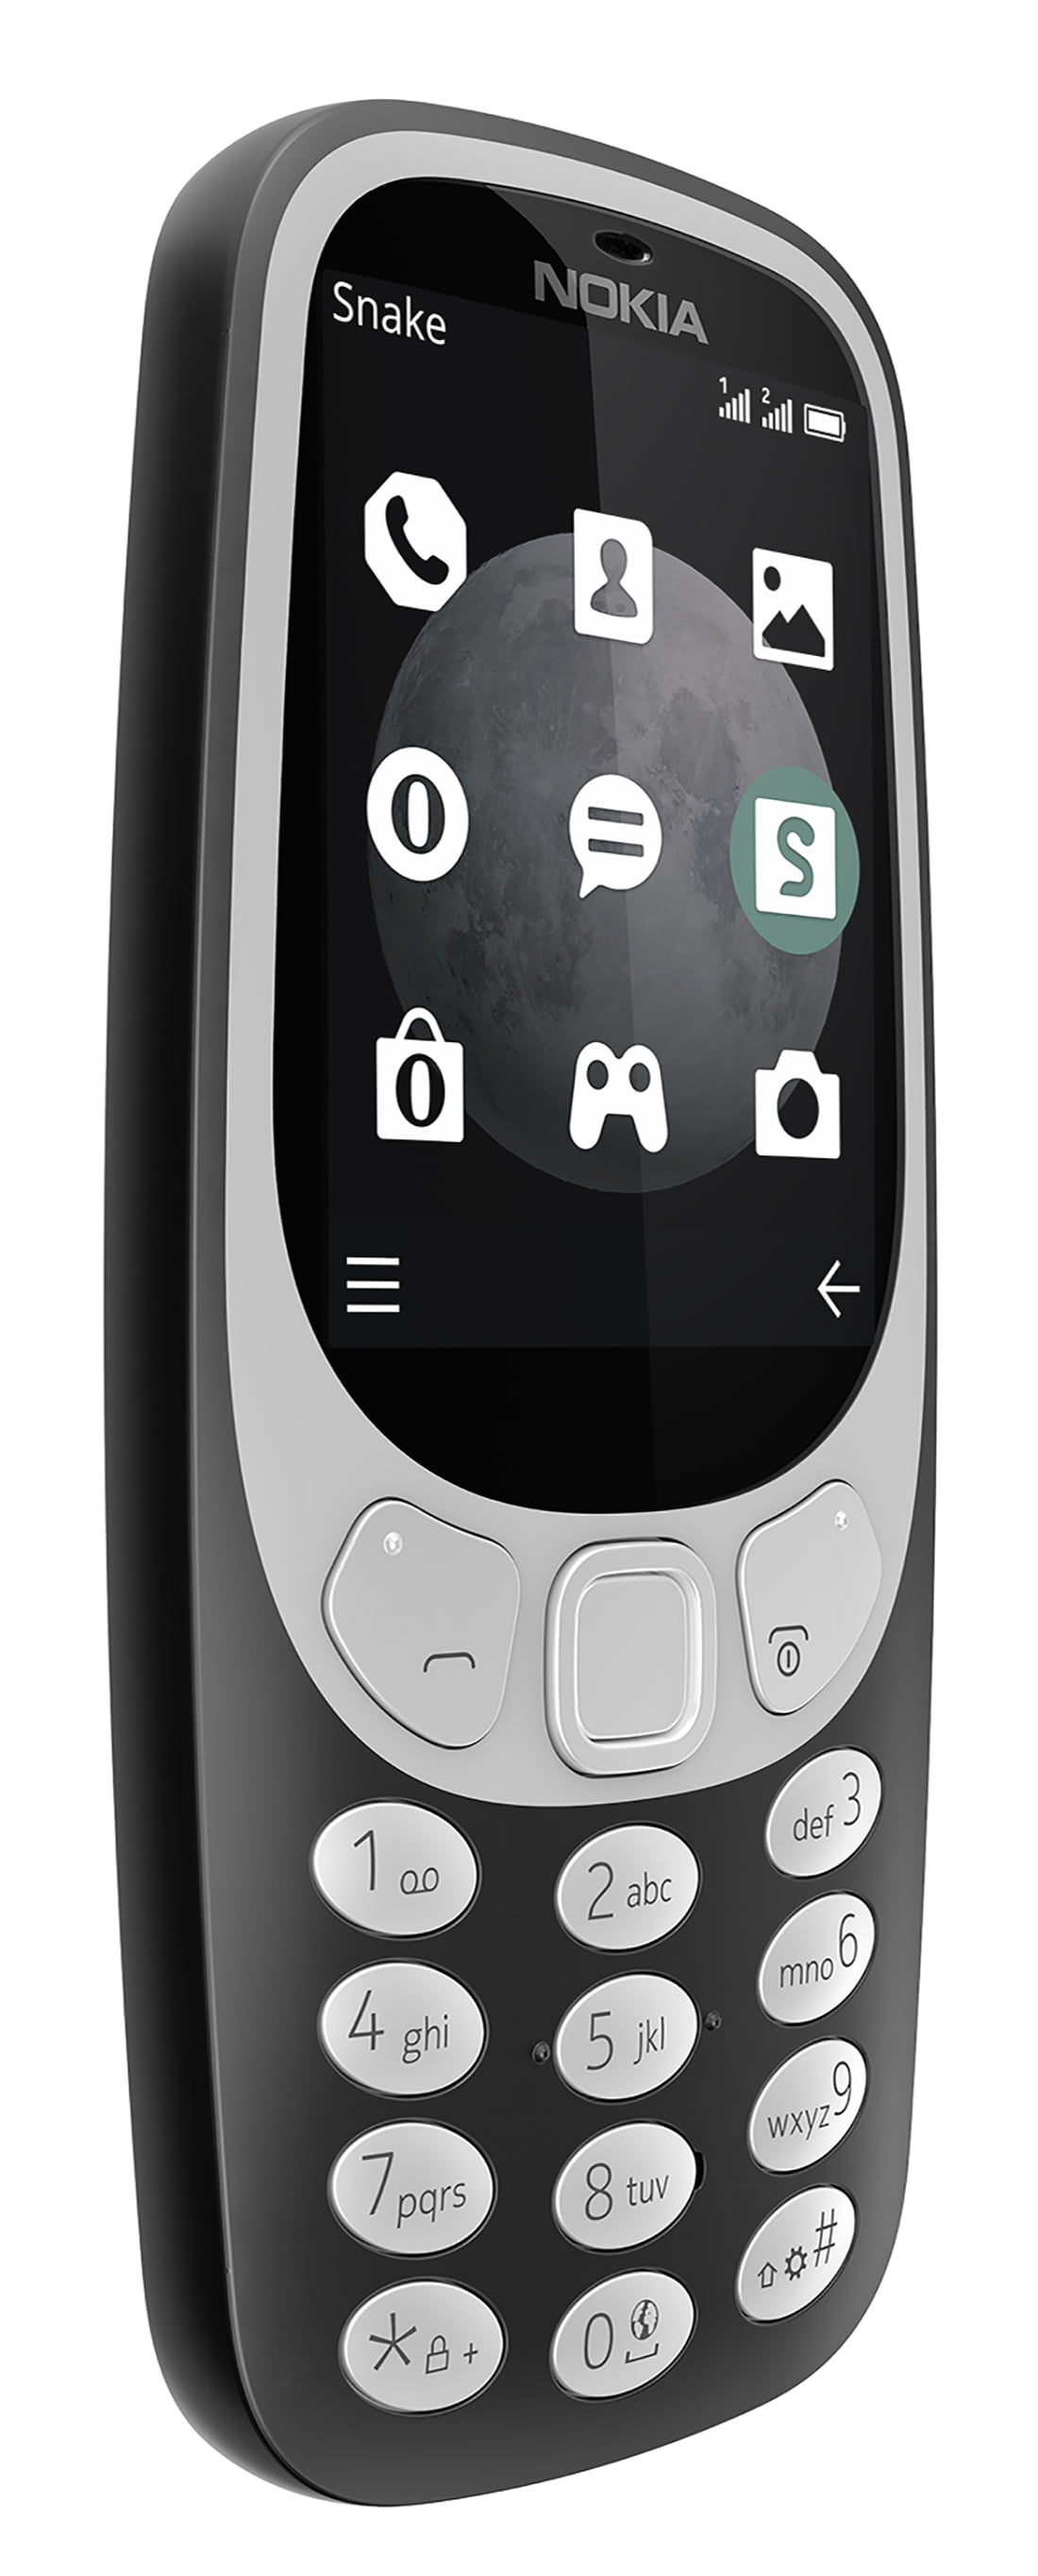 Đã đến lúc bạn trở về với tuổi thơ và những kỷ niệm đẹp khi sở hữu chiếc Nokia